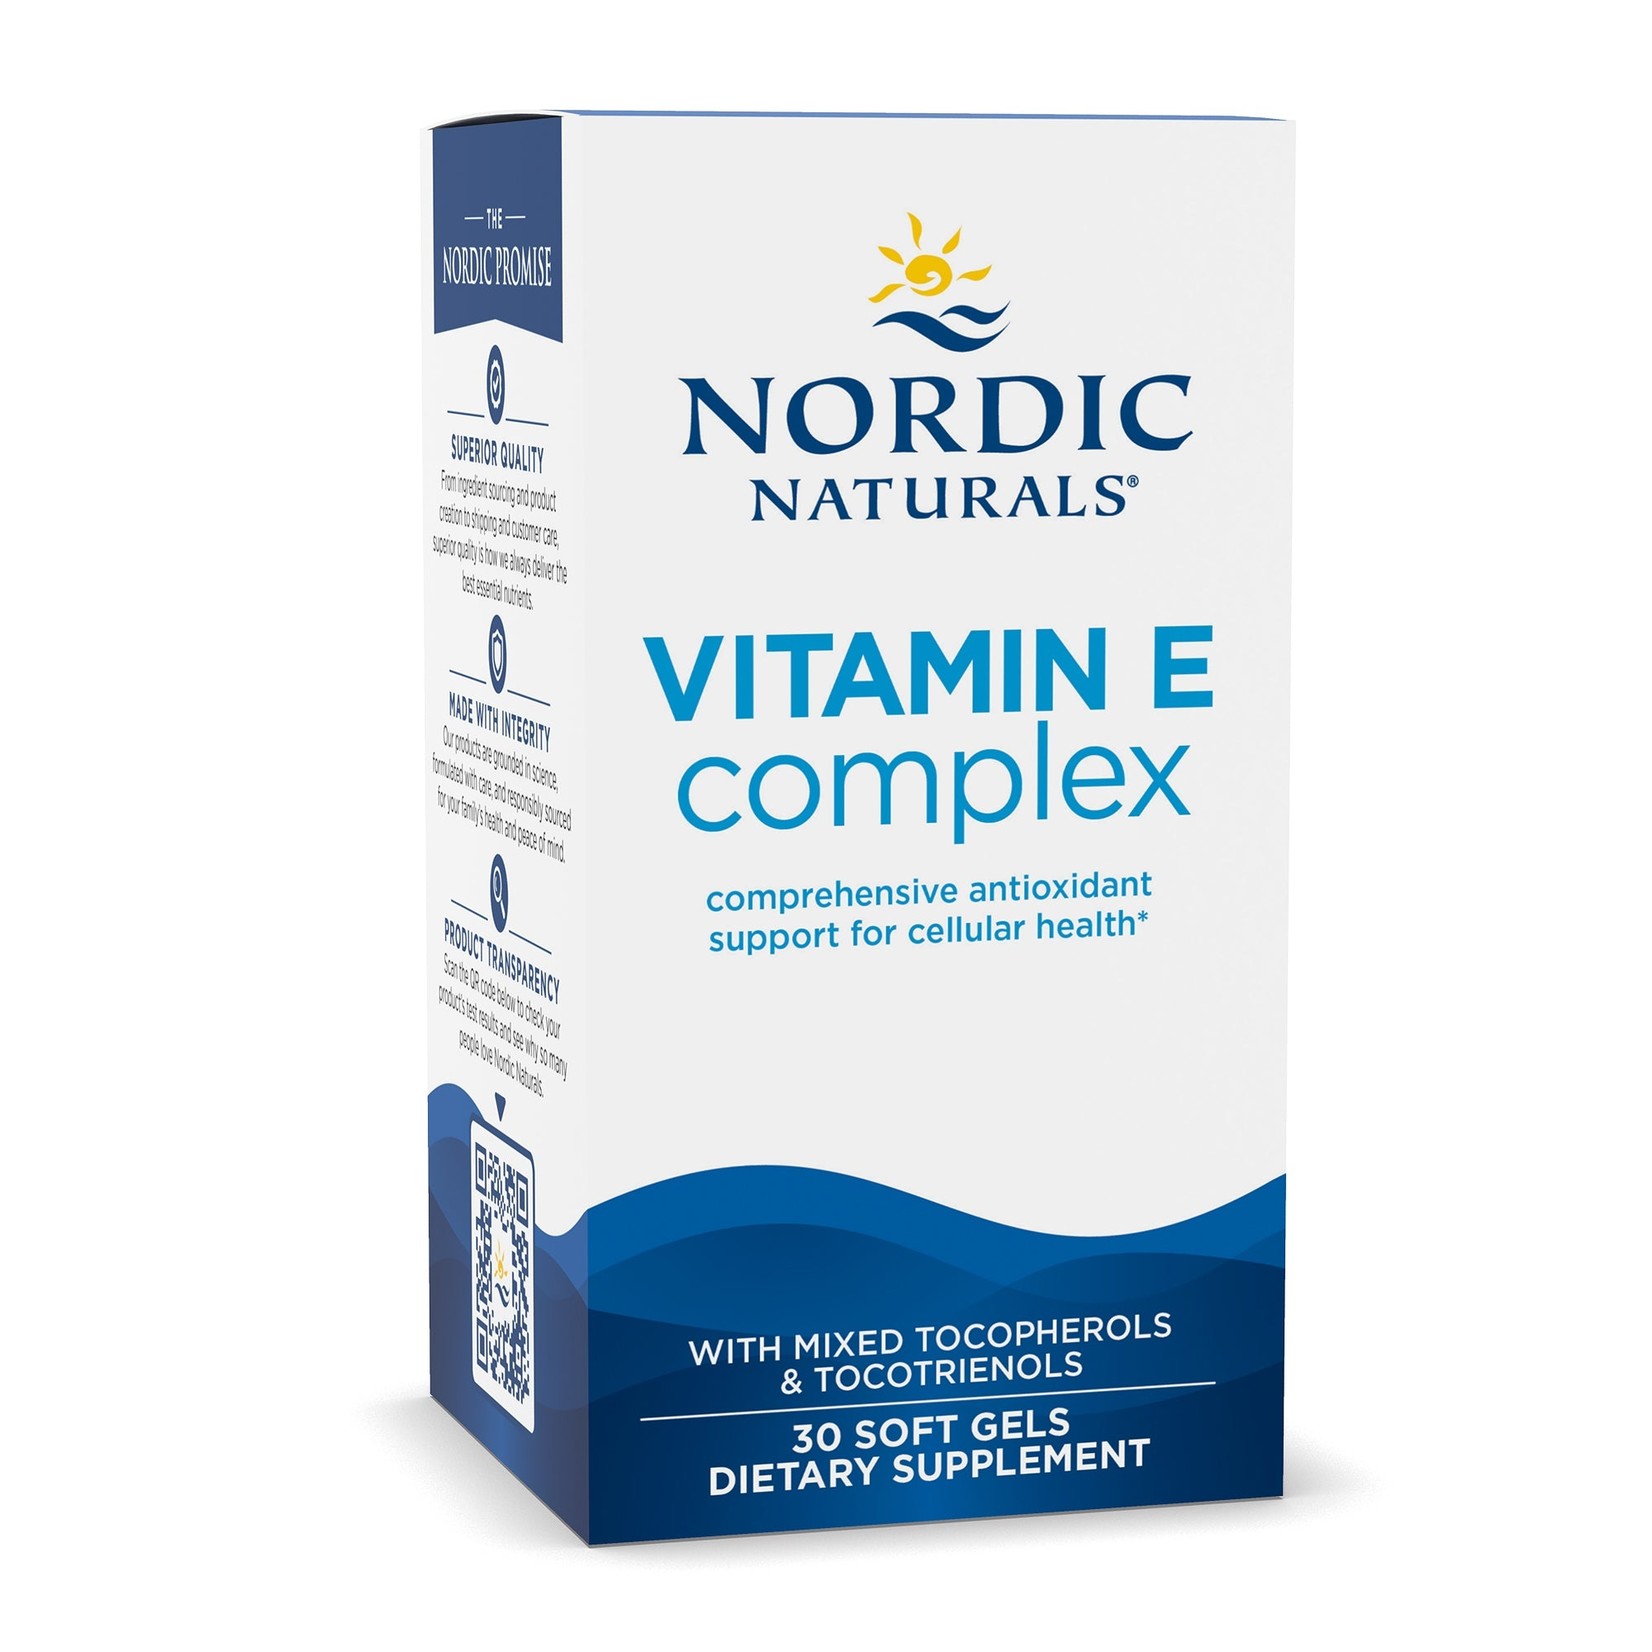 Nordic Naturals Nordic Naturals - Vitamin E Complex - 30 Softgels